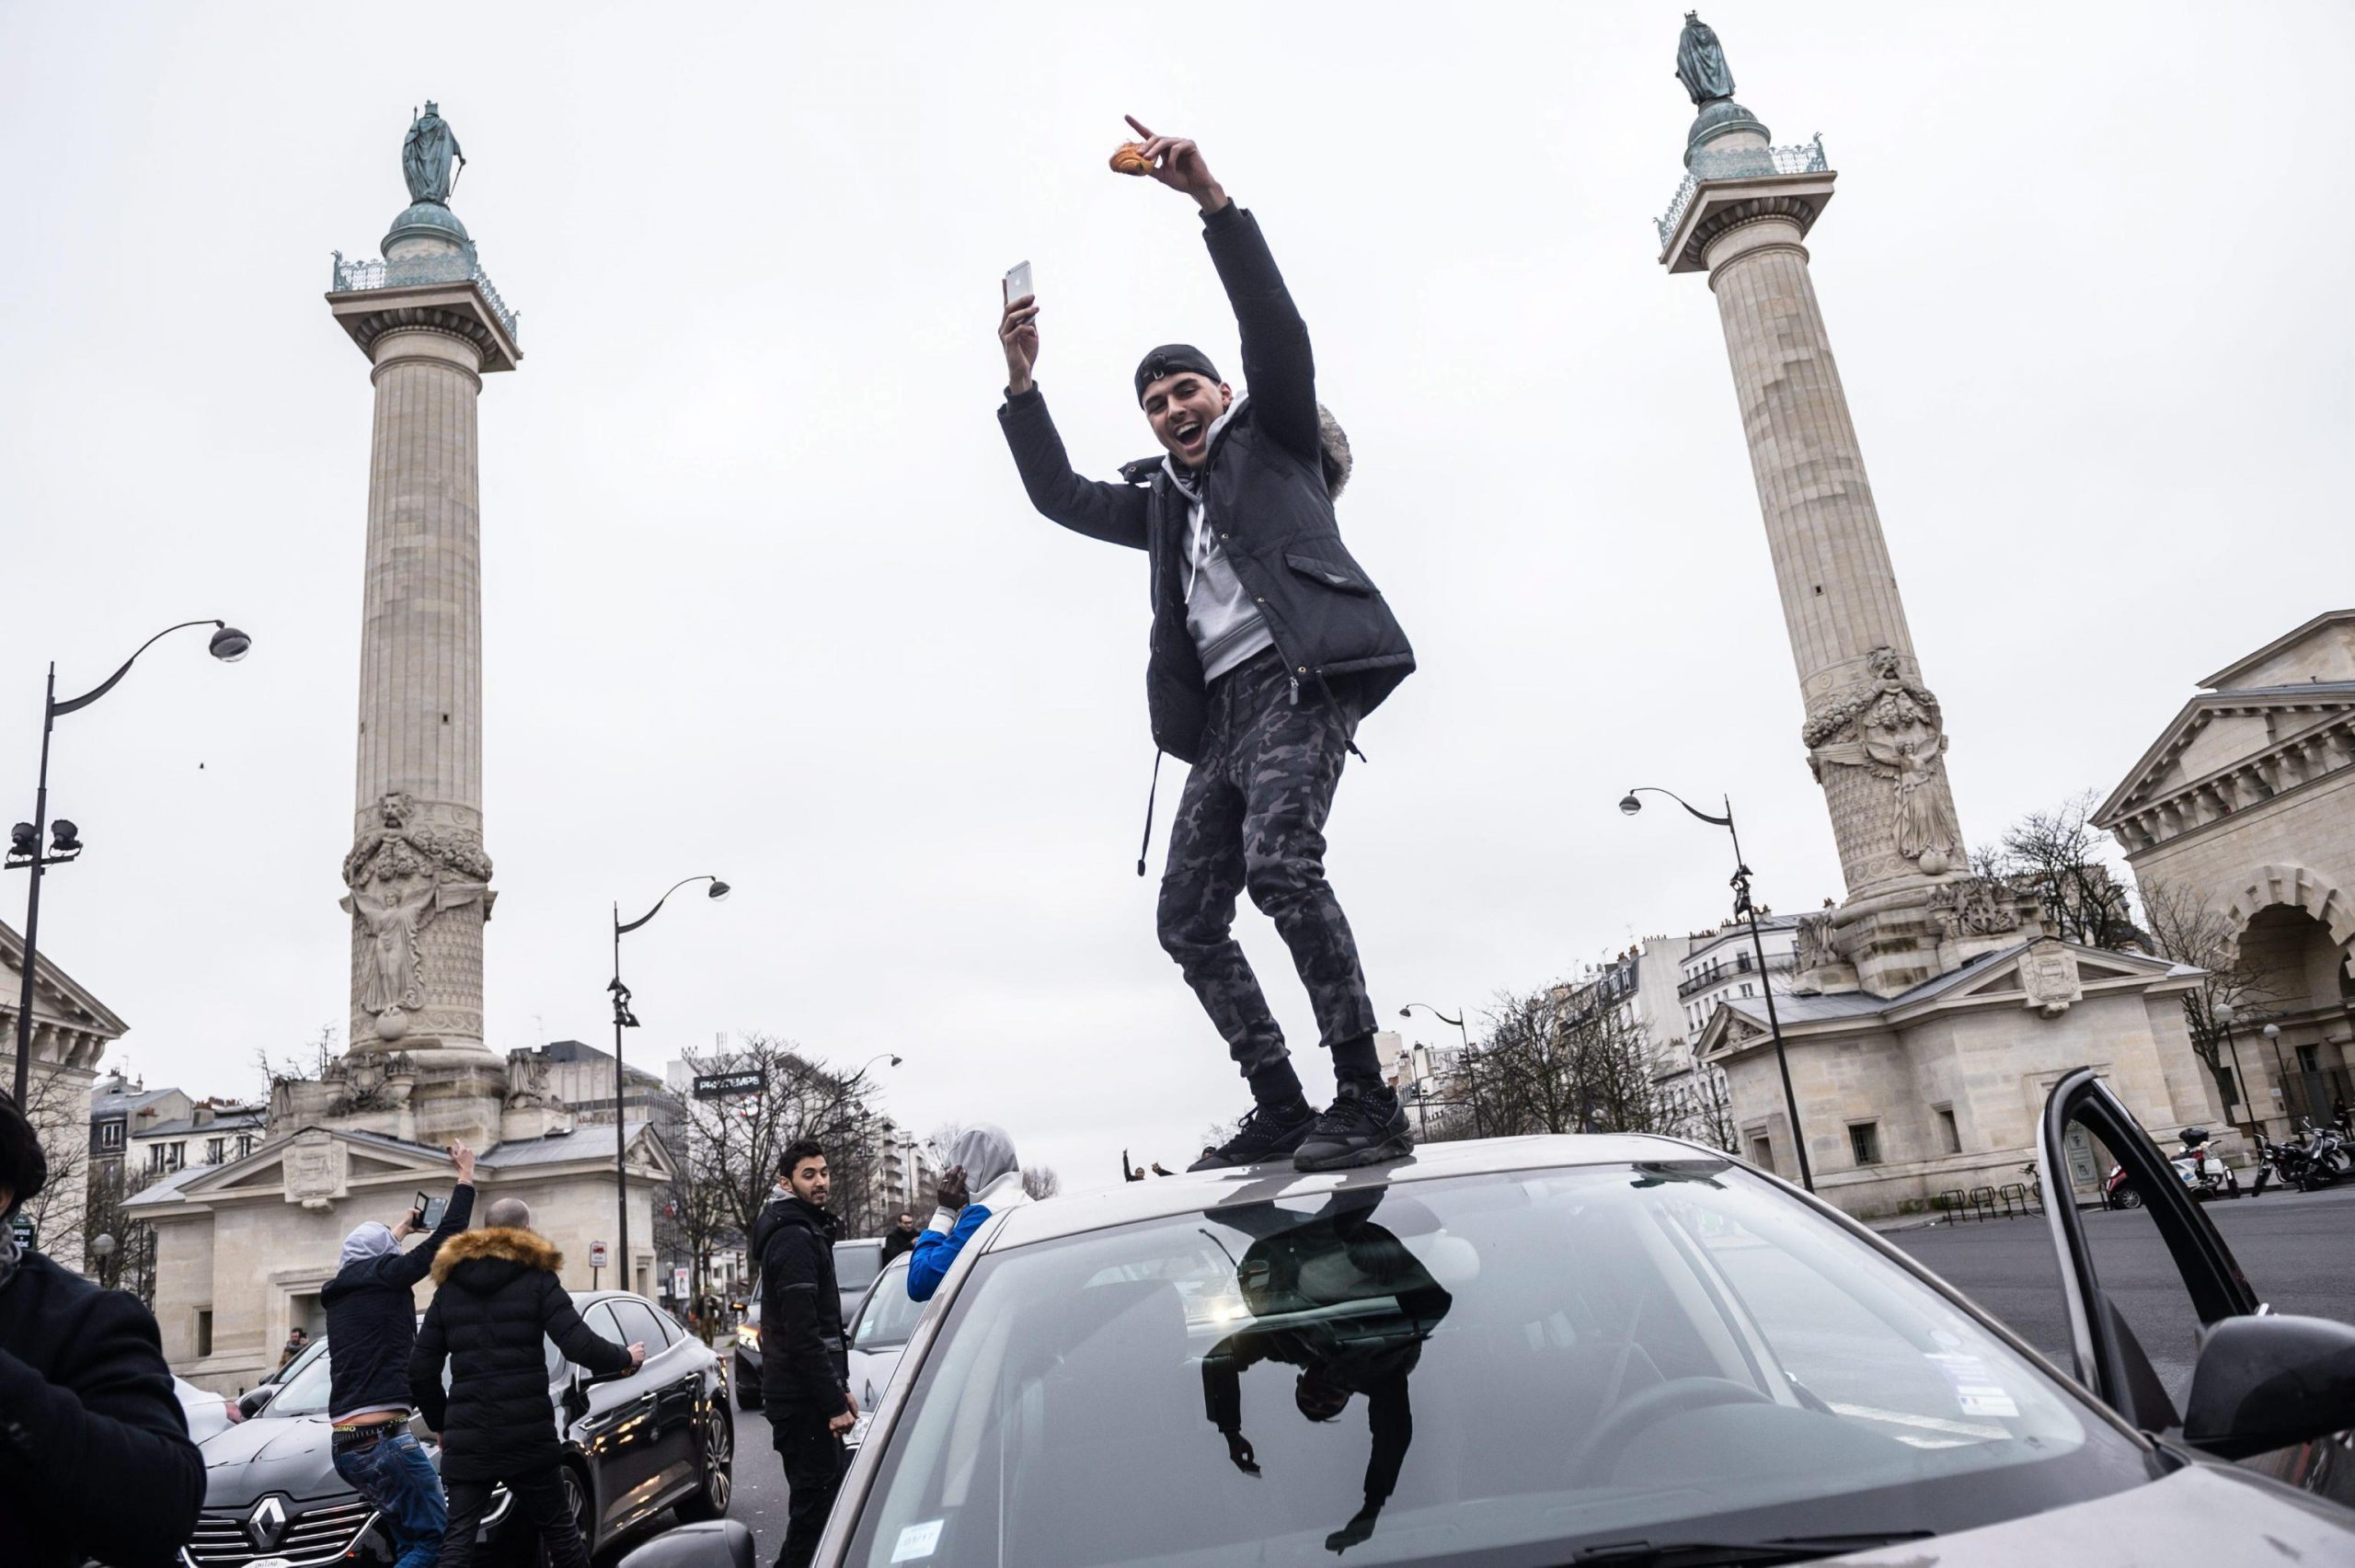 La Francia ha introdotto un compenso minimo garantito per gli autisti di Uber